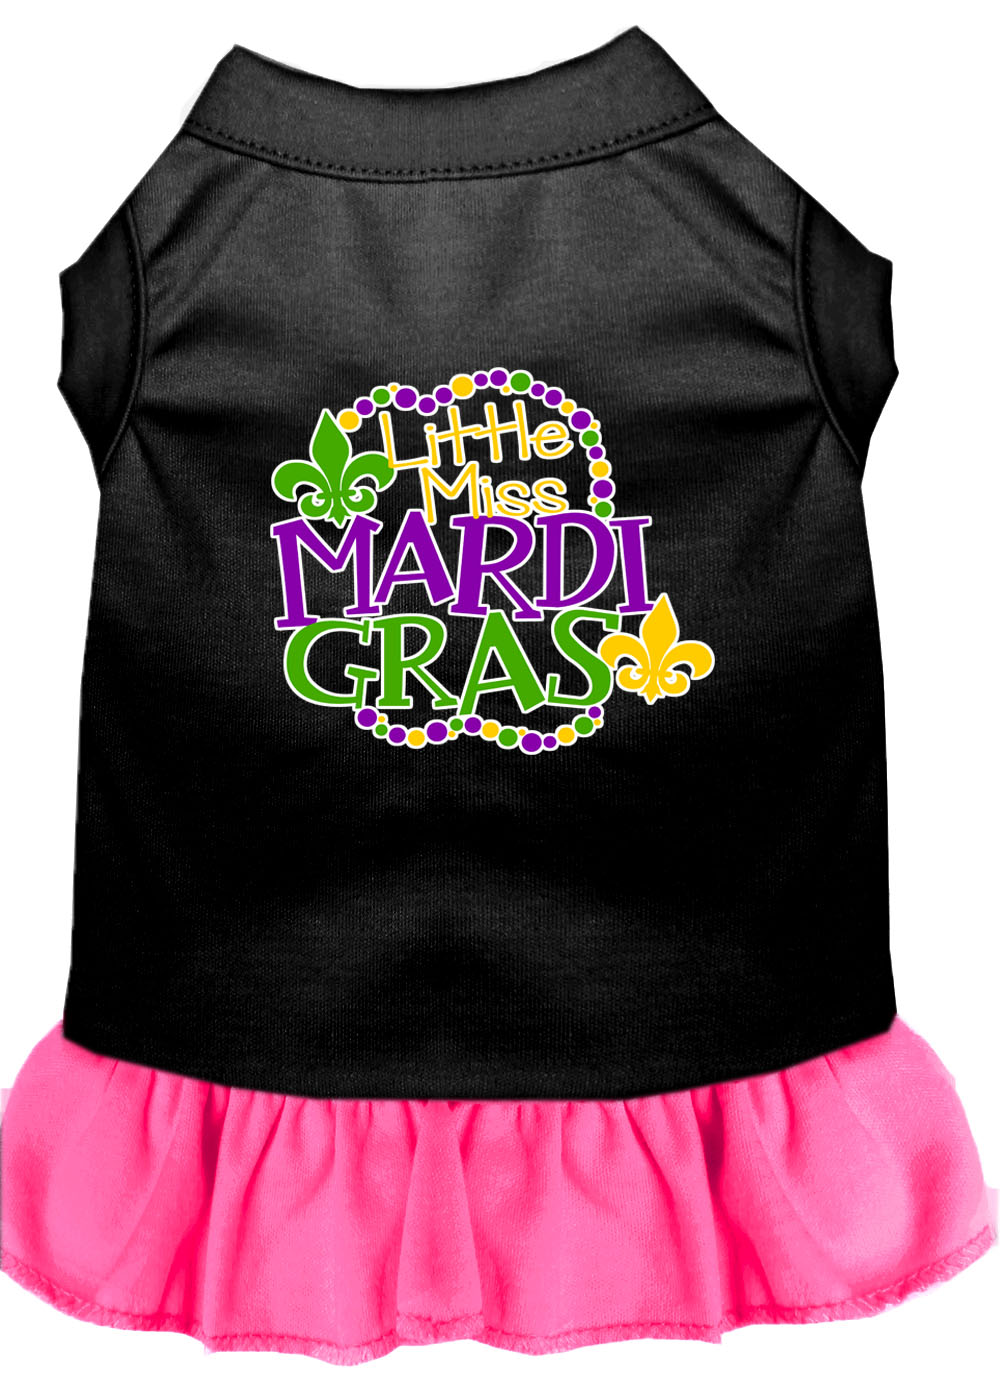 Miss Mardi Gras Screen Print Mardi Gras Dog Dress Black with Bright Pink XXXL